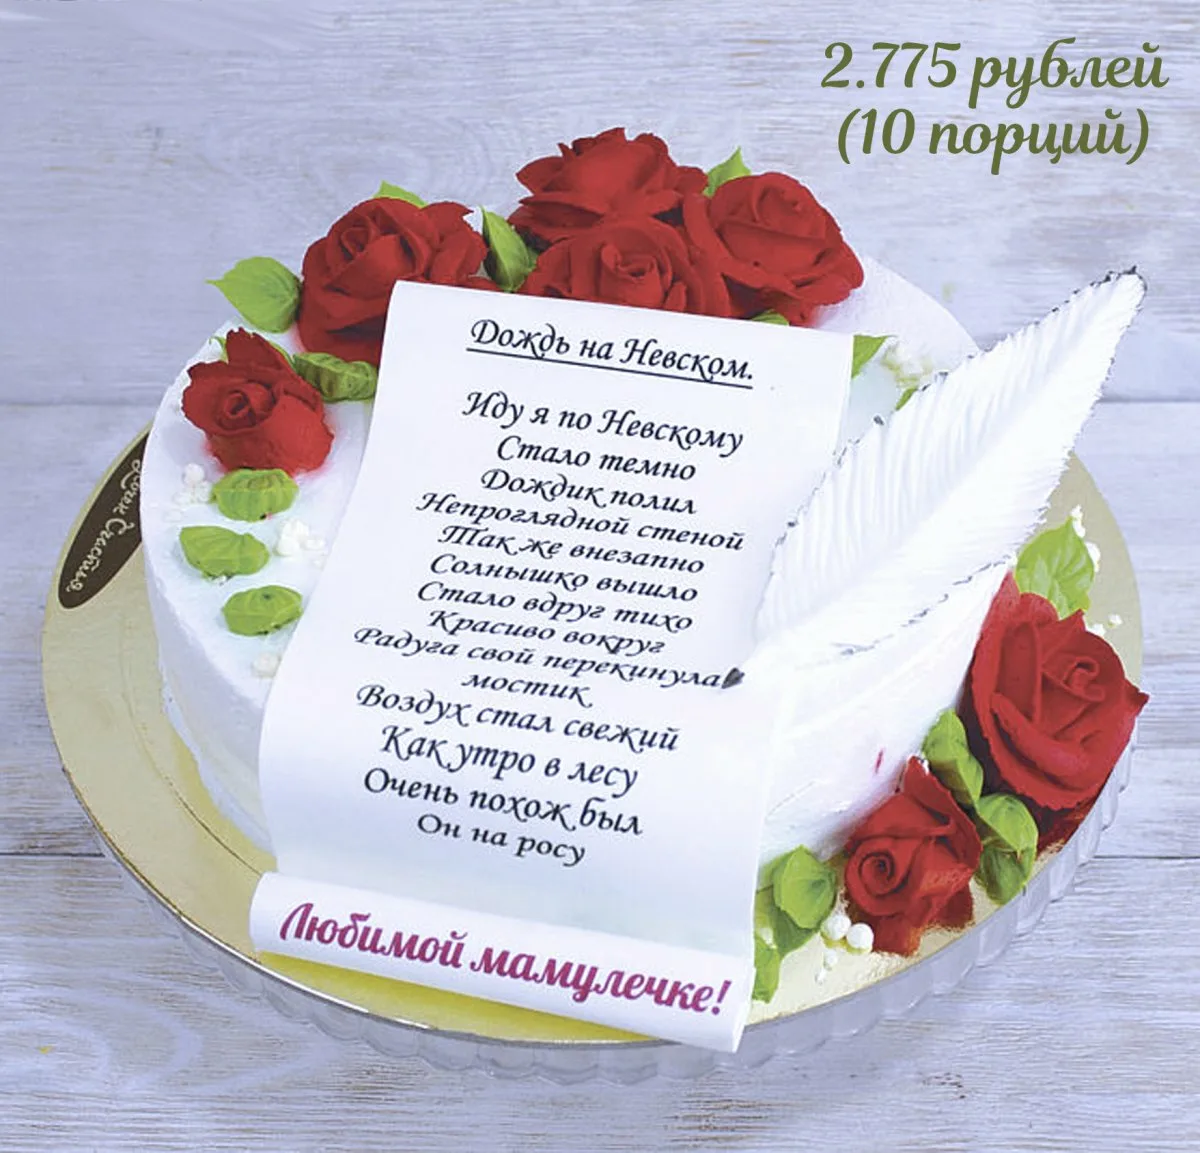 Фото Стихи к подарку торт на день рождения #31